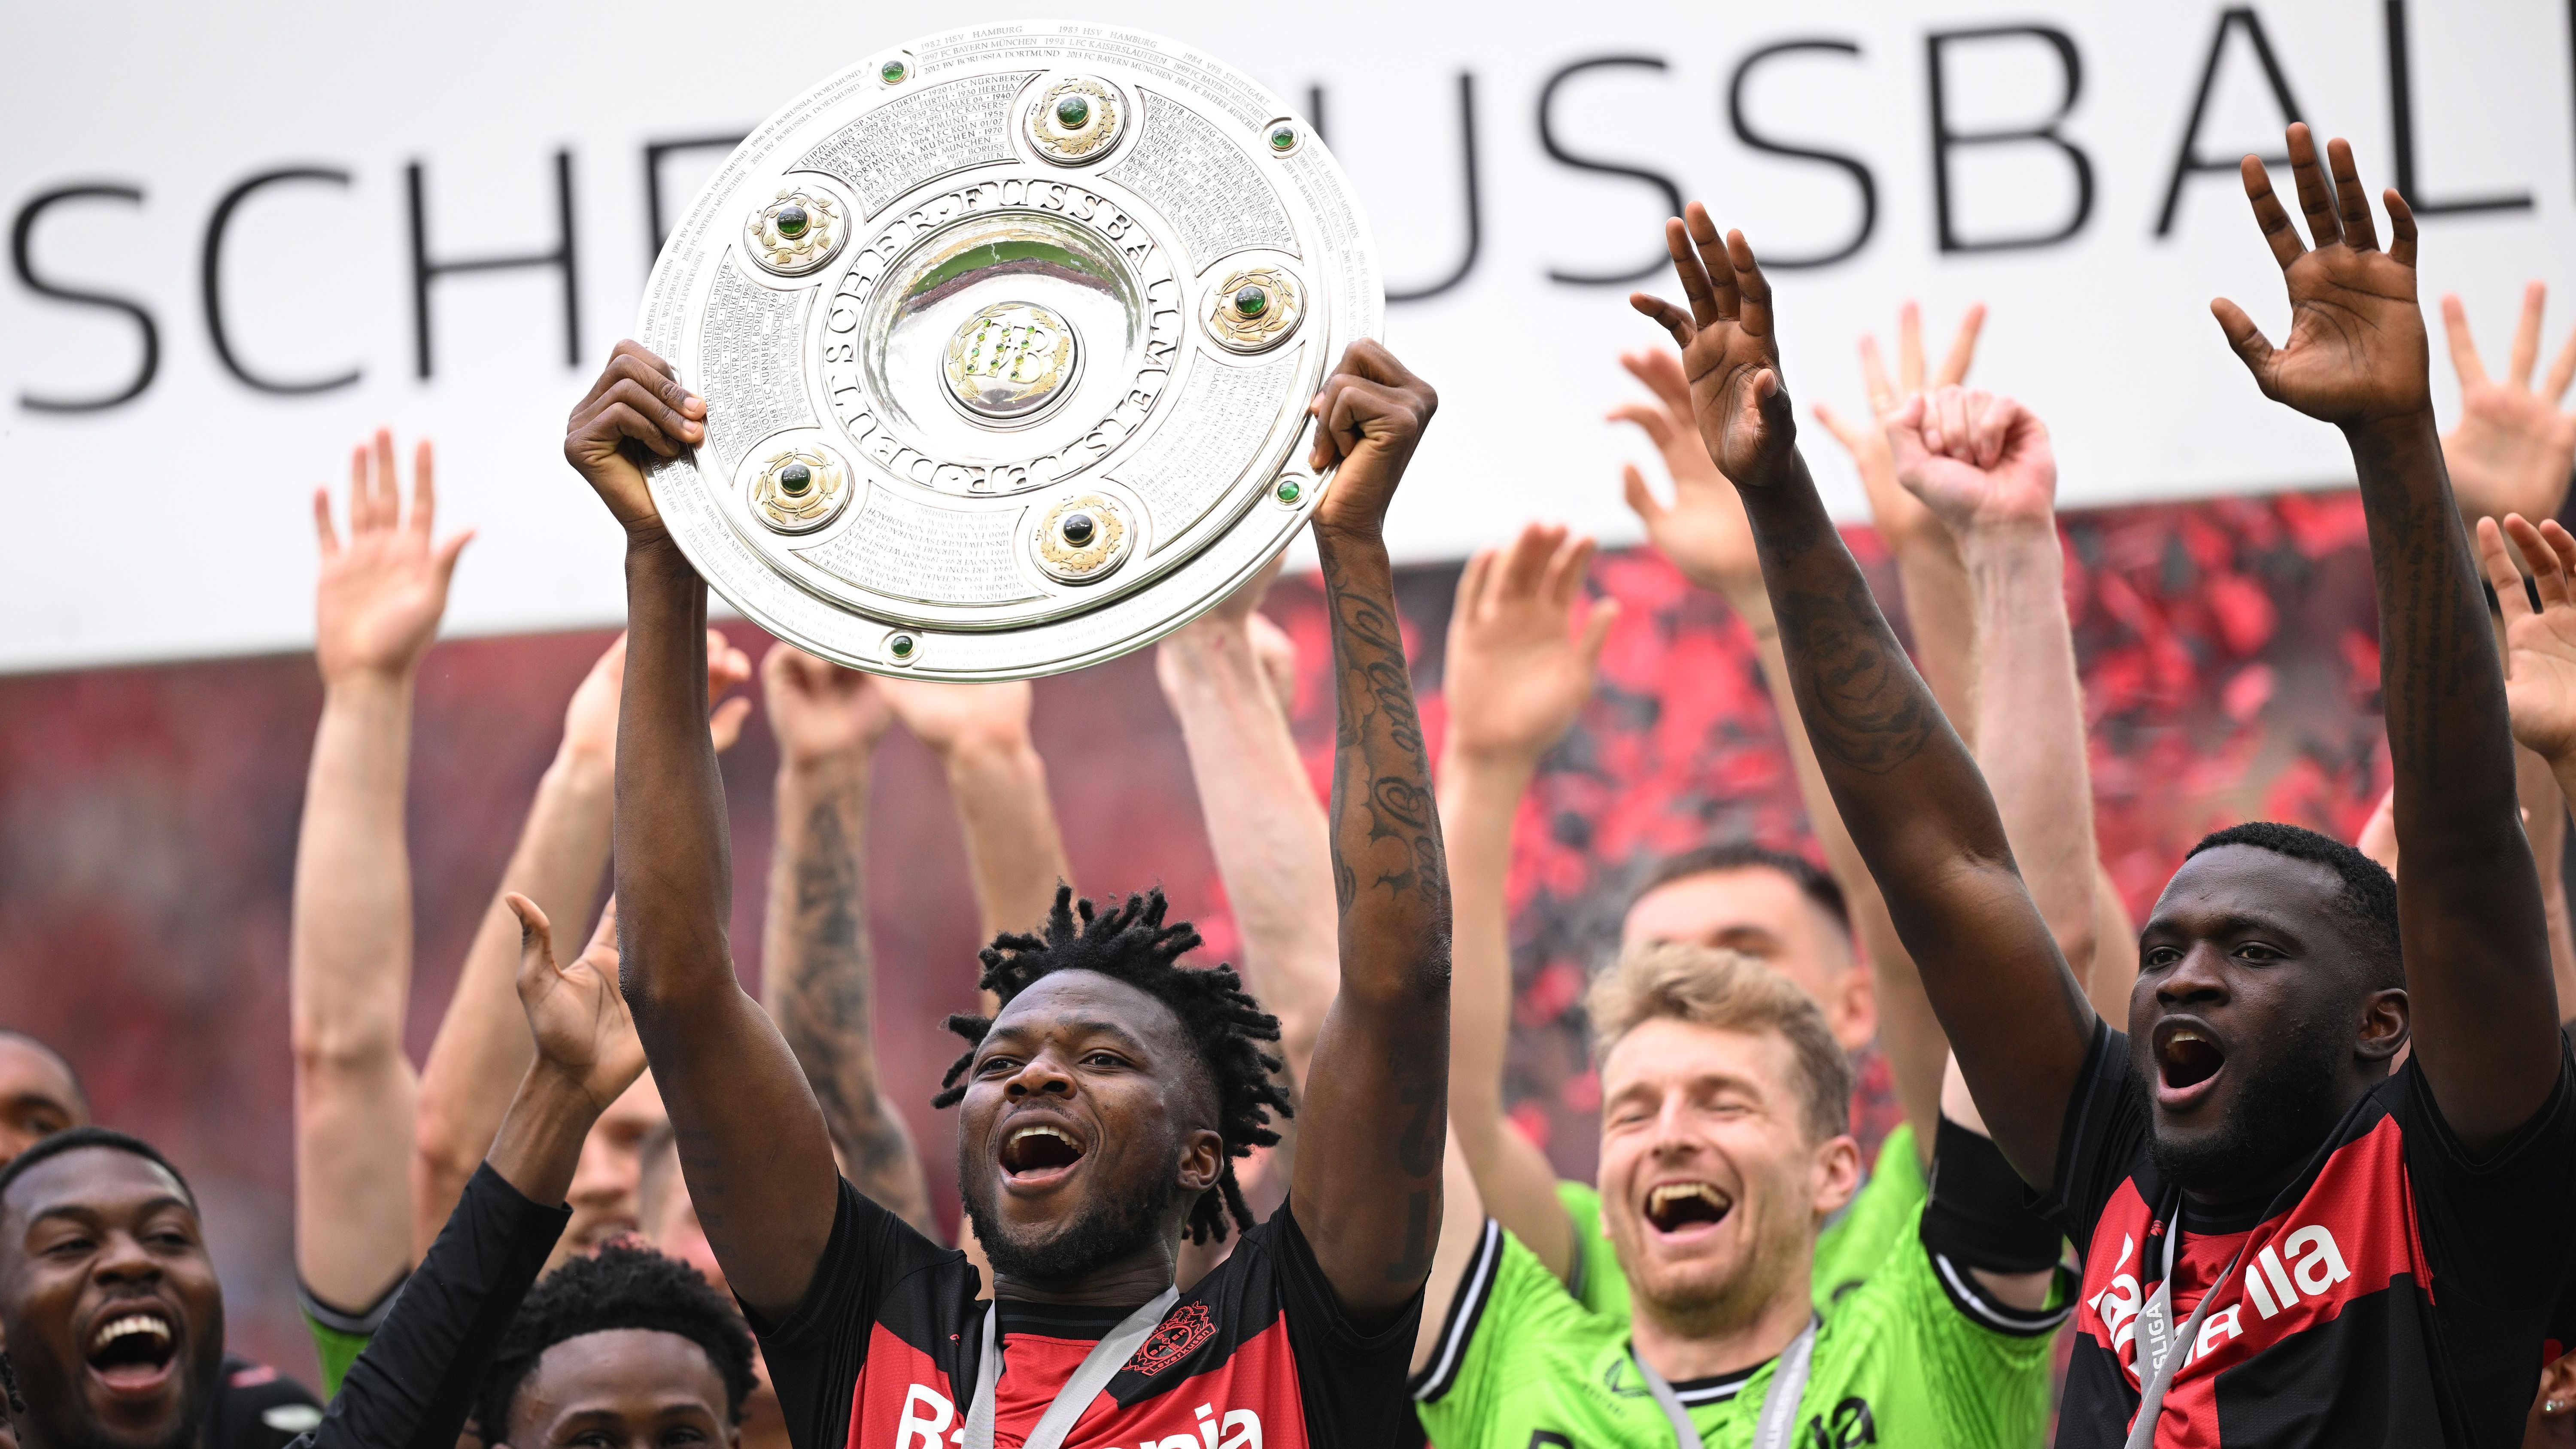 <strong>Bundesliga-Spiele bis zur ersten Niederlage: Leverkusen-Trio auf dem Vormarsch</strong><br>Bayer Leverkusen hat es geschafft. Der Klub ist der erste in der Geschichte der deutschen Bundesliga, der eine komplette Saison ungeschlagen geblieben ist. Die Neuzugänge der Vorsaison haben also noch gar kein Bundesligaspiel im Bayer-Dress verloren.&nbsp;<strong><em>ran</em></strong> zeigt die Spieler mit den meisten Bundesligaeinsätzen bis zur ersten Niederlage.